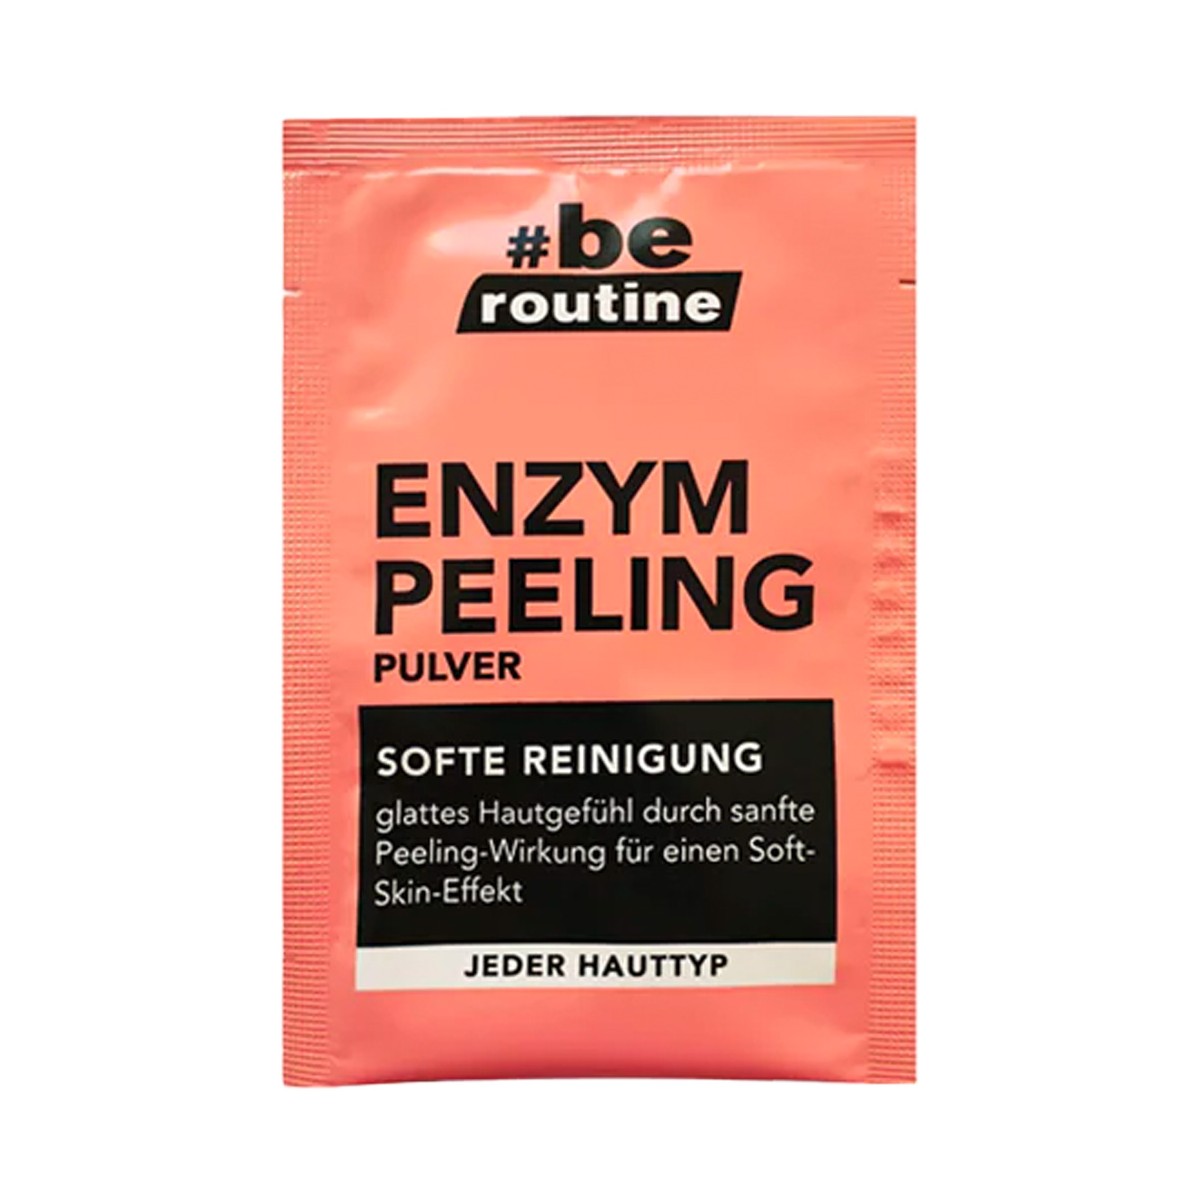 Peeling - Cosmética Natural al mejor precio: Peeling enzimático Be Routine Enzym Peeling Pulver de be routine en Skin Thinks - Piel Seca